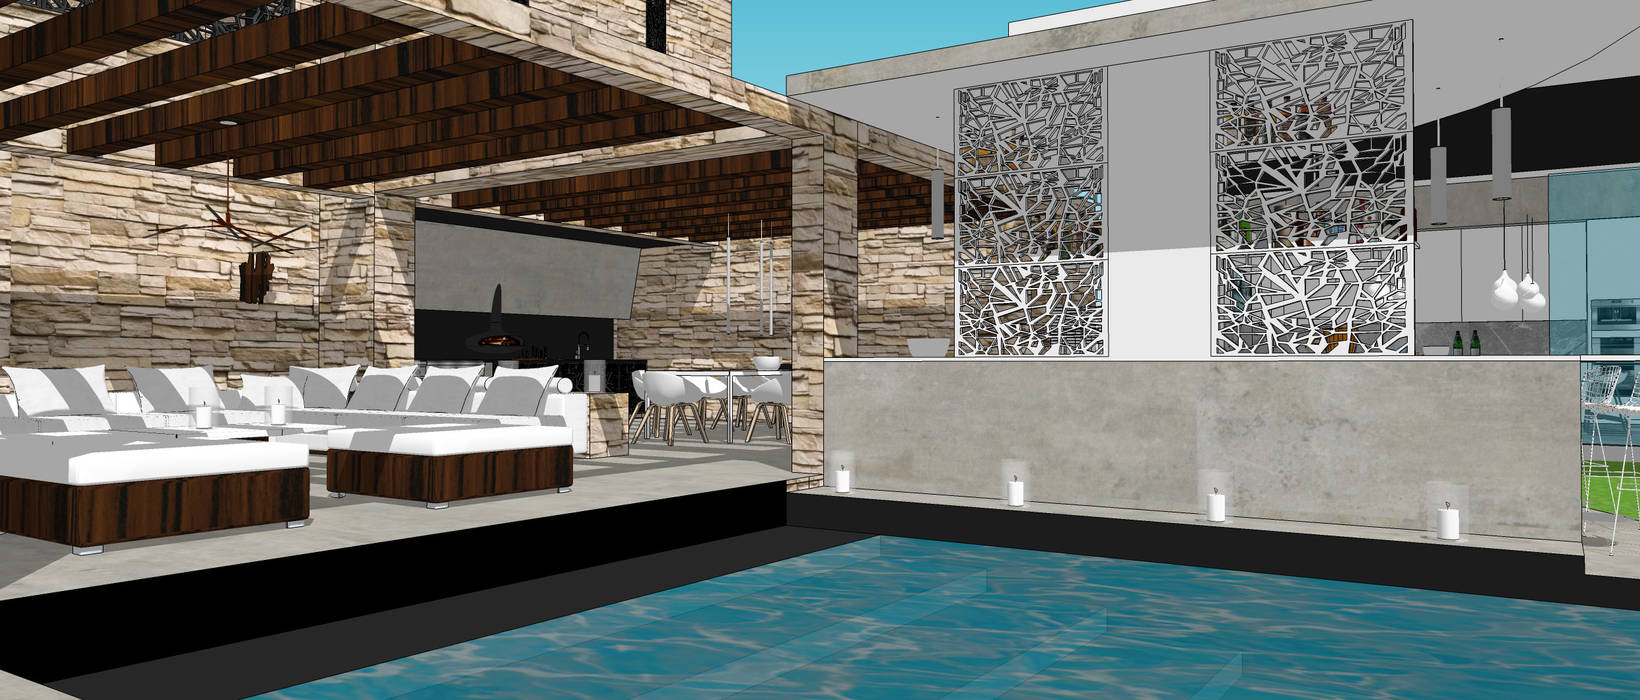 Villa contemporaine 2, Architecture interieure Laure Toury Architecture interieure Laure Toury Minimalist pool